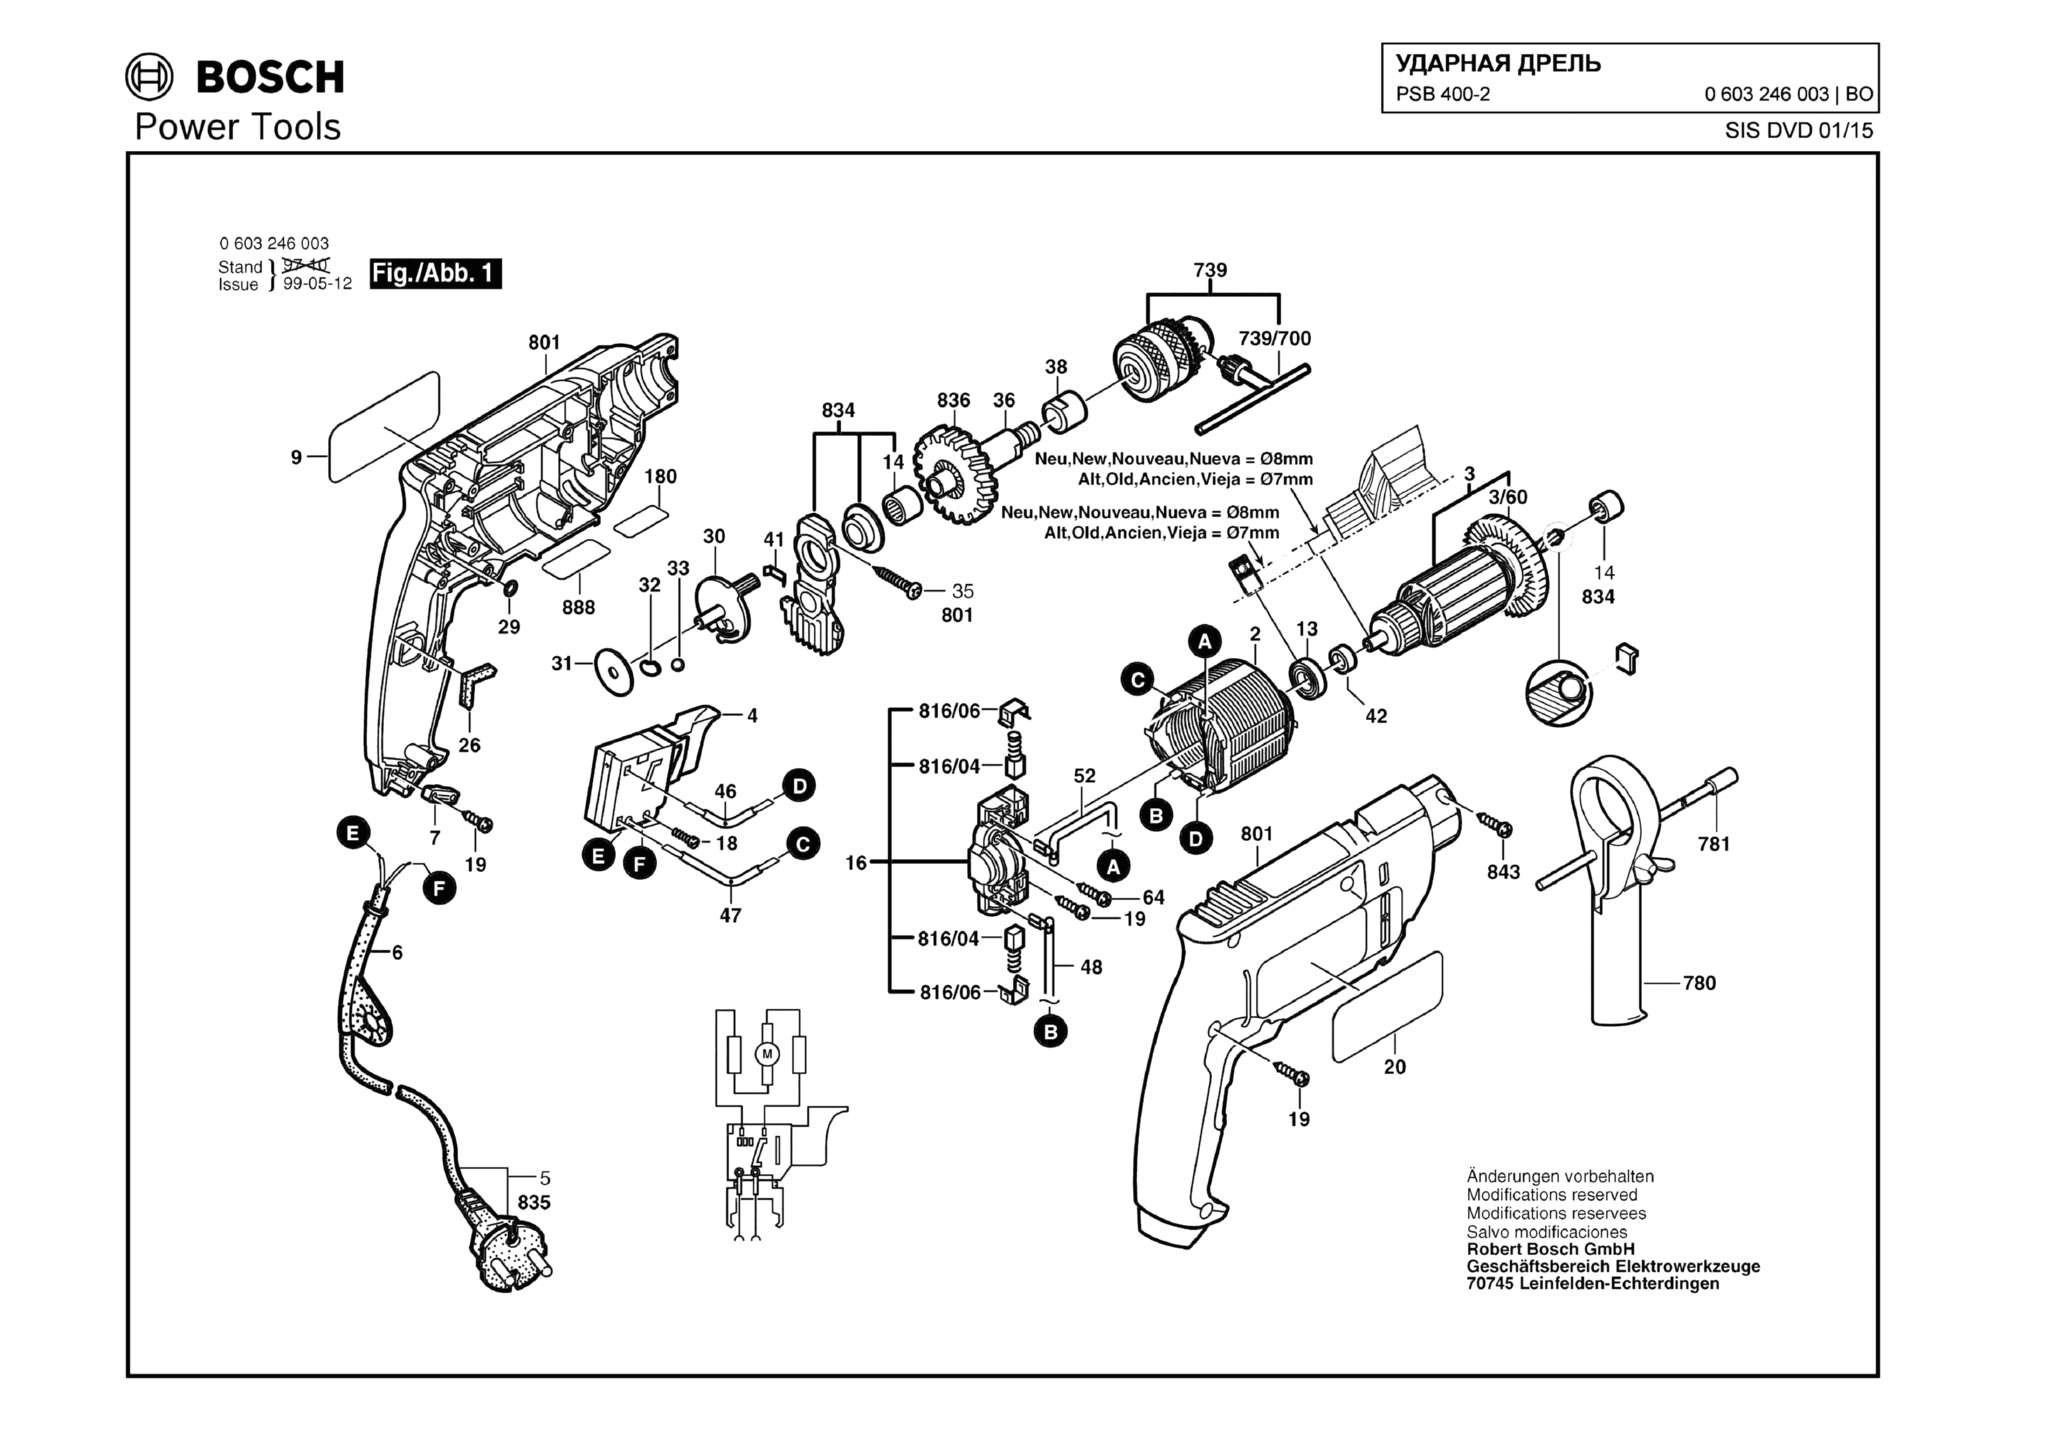 Запчасти, схема и деталировка Bosch PSB 400-2 (ТИП 0603246003)